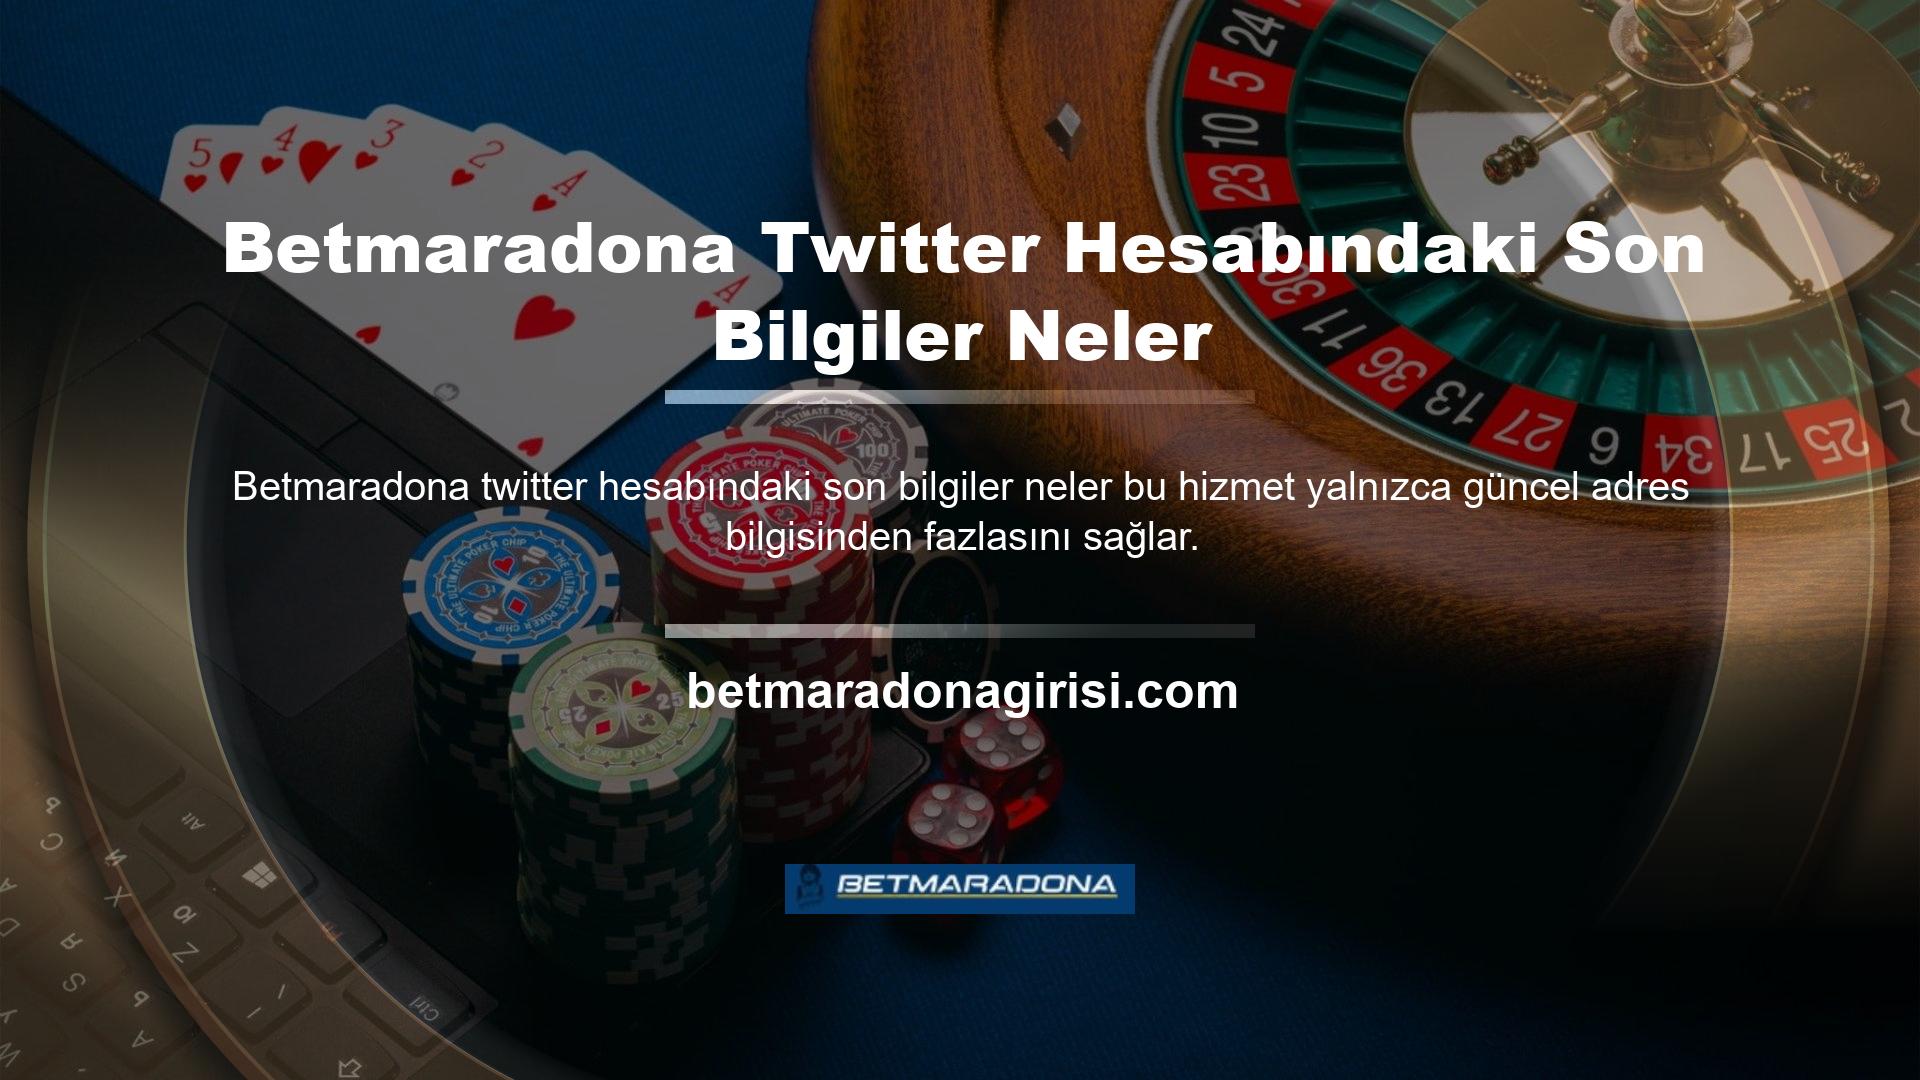 Yeni güncellemeler için Betmaradona Twitter hesabını da takip edebilirsiniz